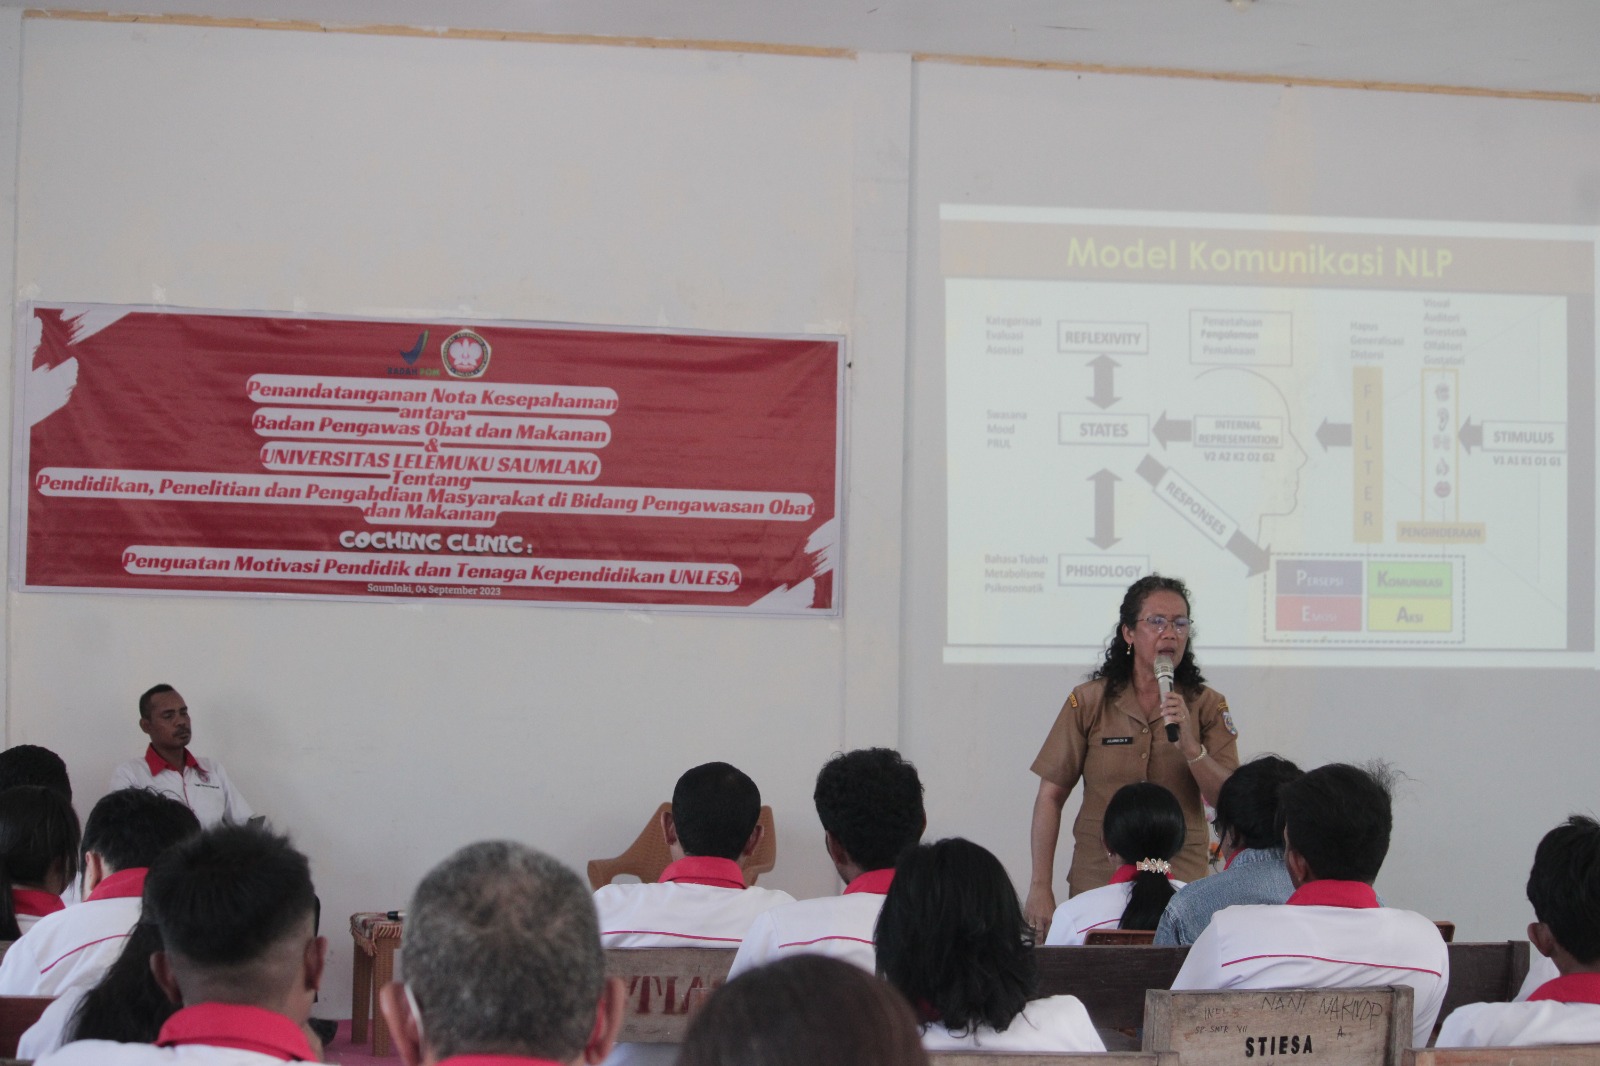 Yuliana Ch Ratuanak saat membagikan materi coaching clinic kepada dosen dan tenaga kependidikan di UNLESA